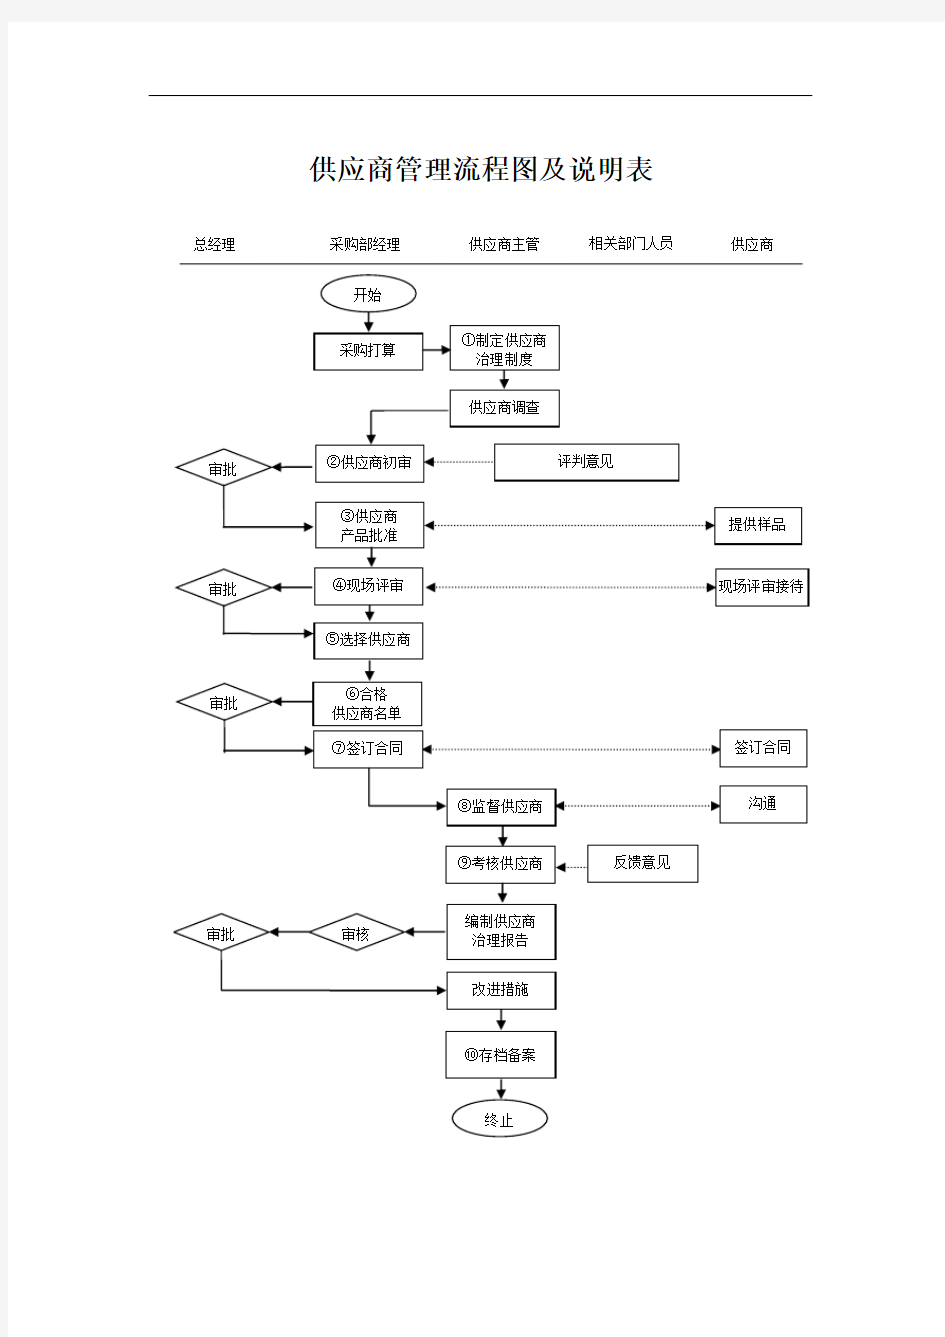 供应商管理流程图及说明表